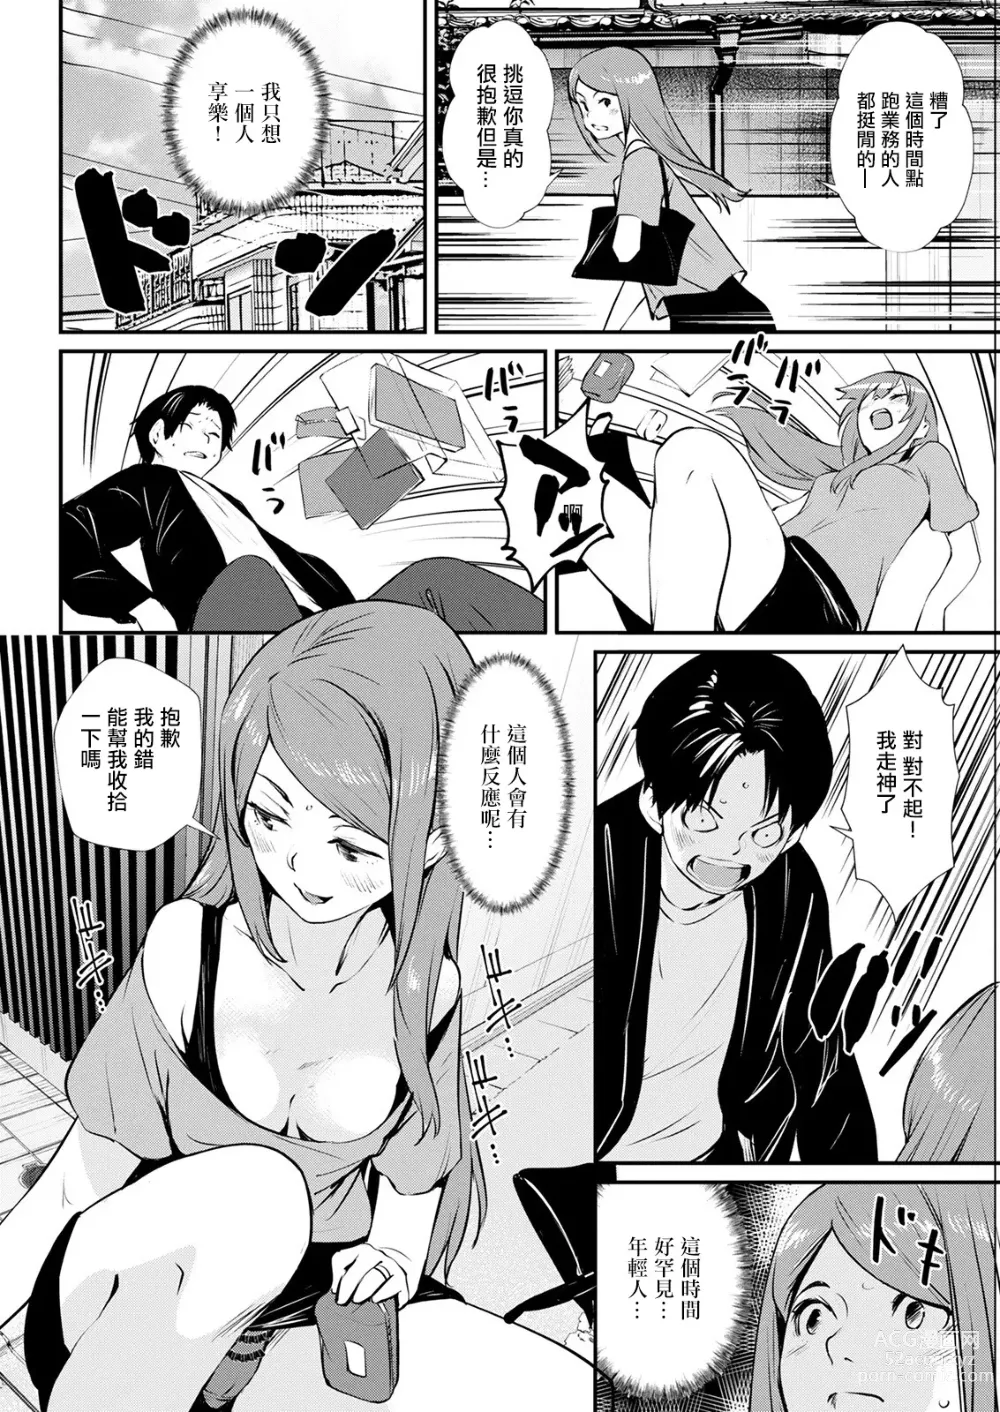 Page 4 of manga Abunai Chouhatsu